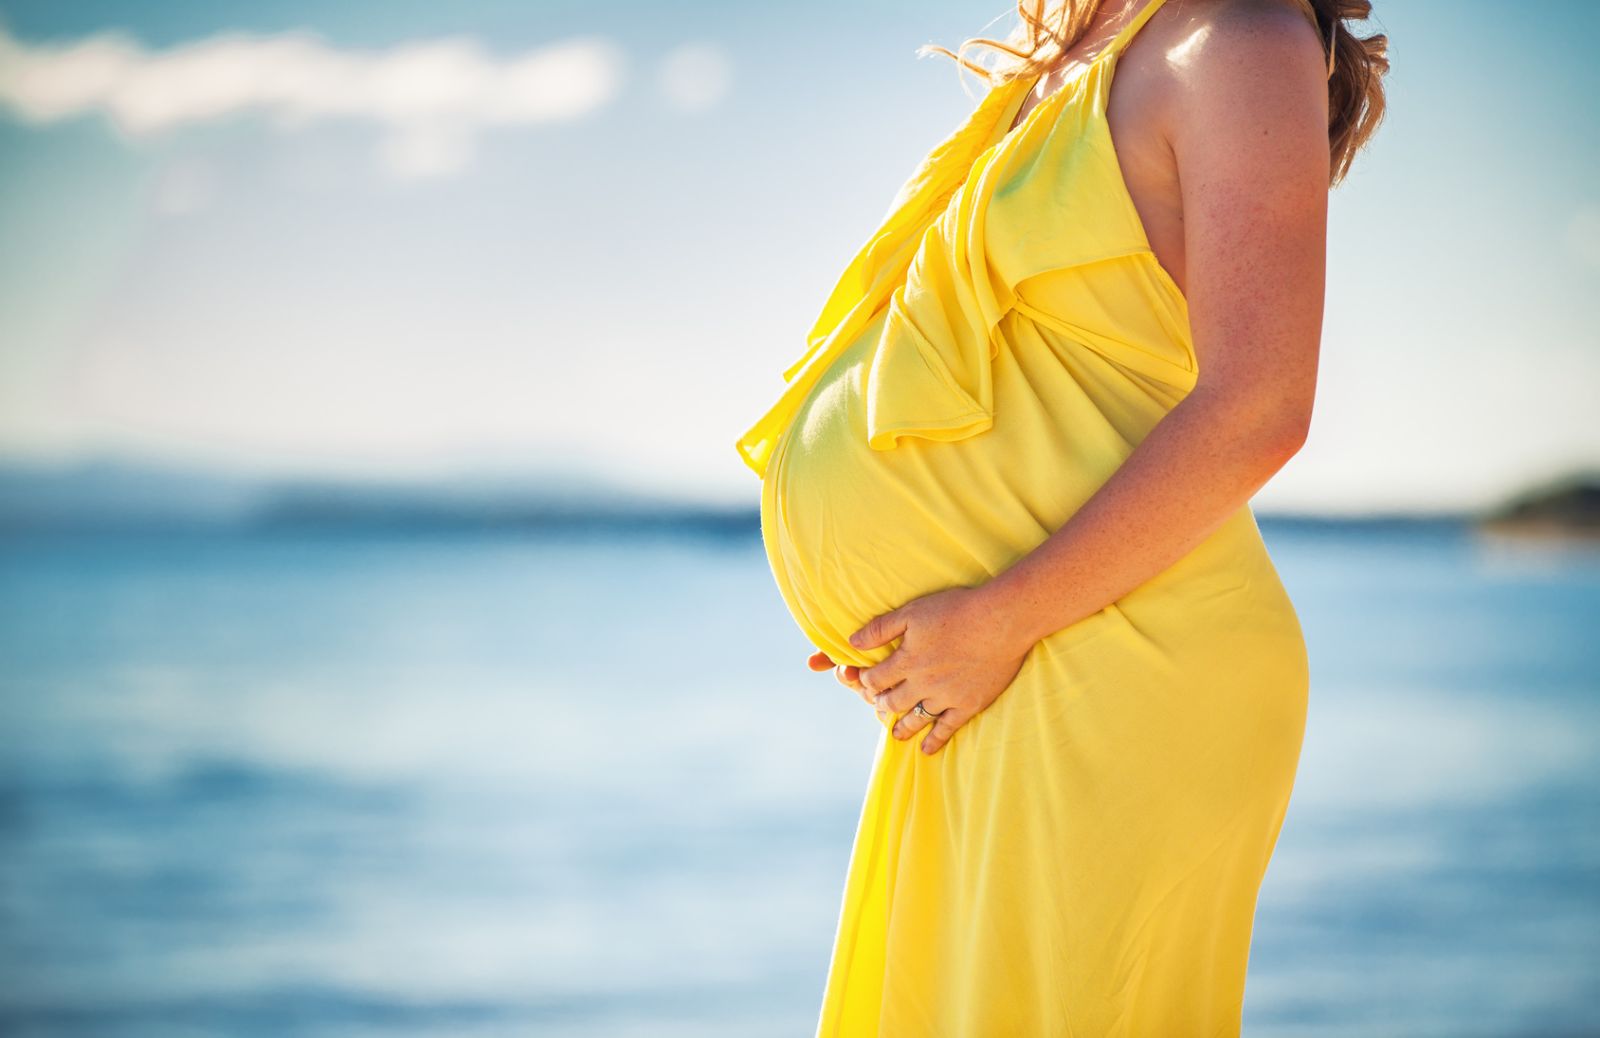 Abbronzarsi in gravidanza: consigli per una tintarella a misura di pancione